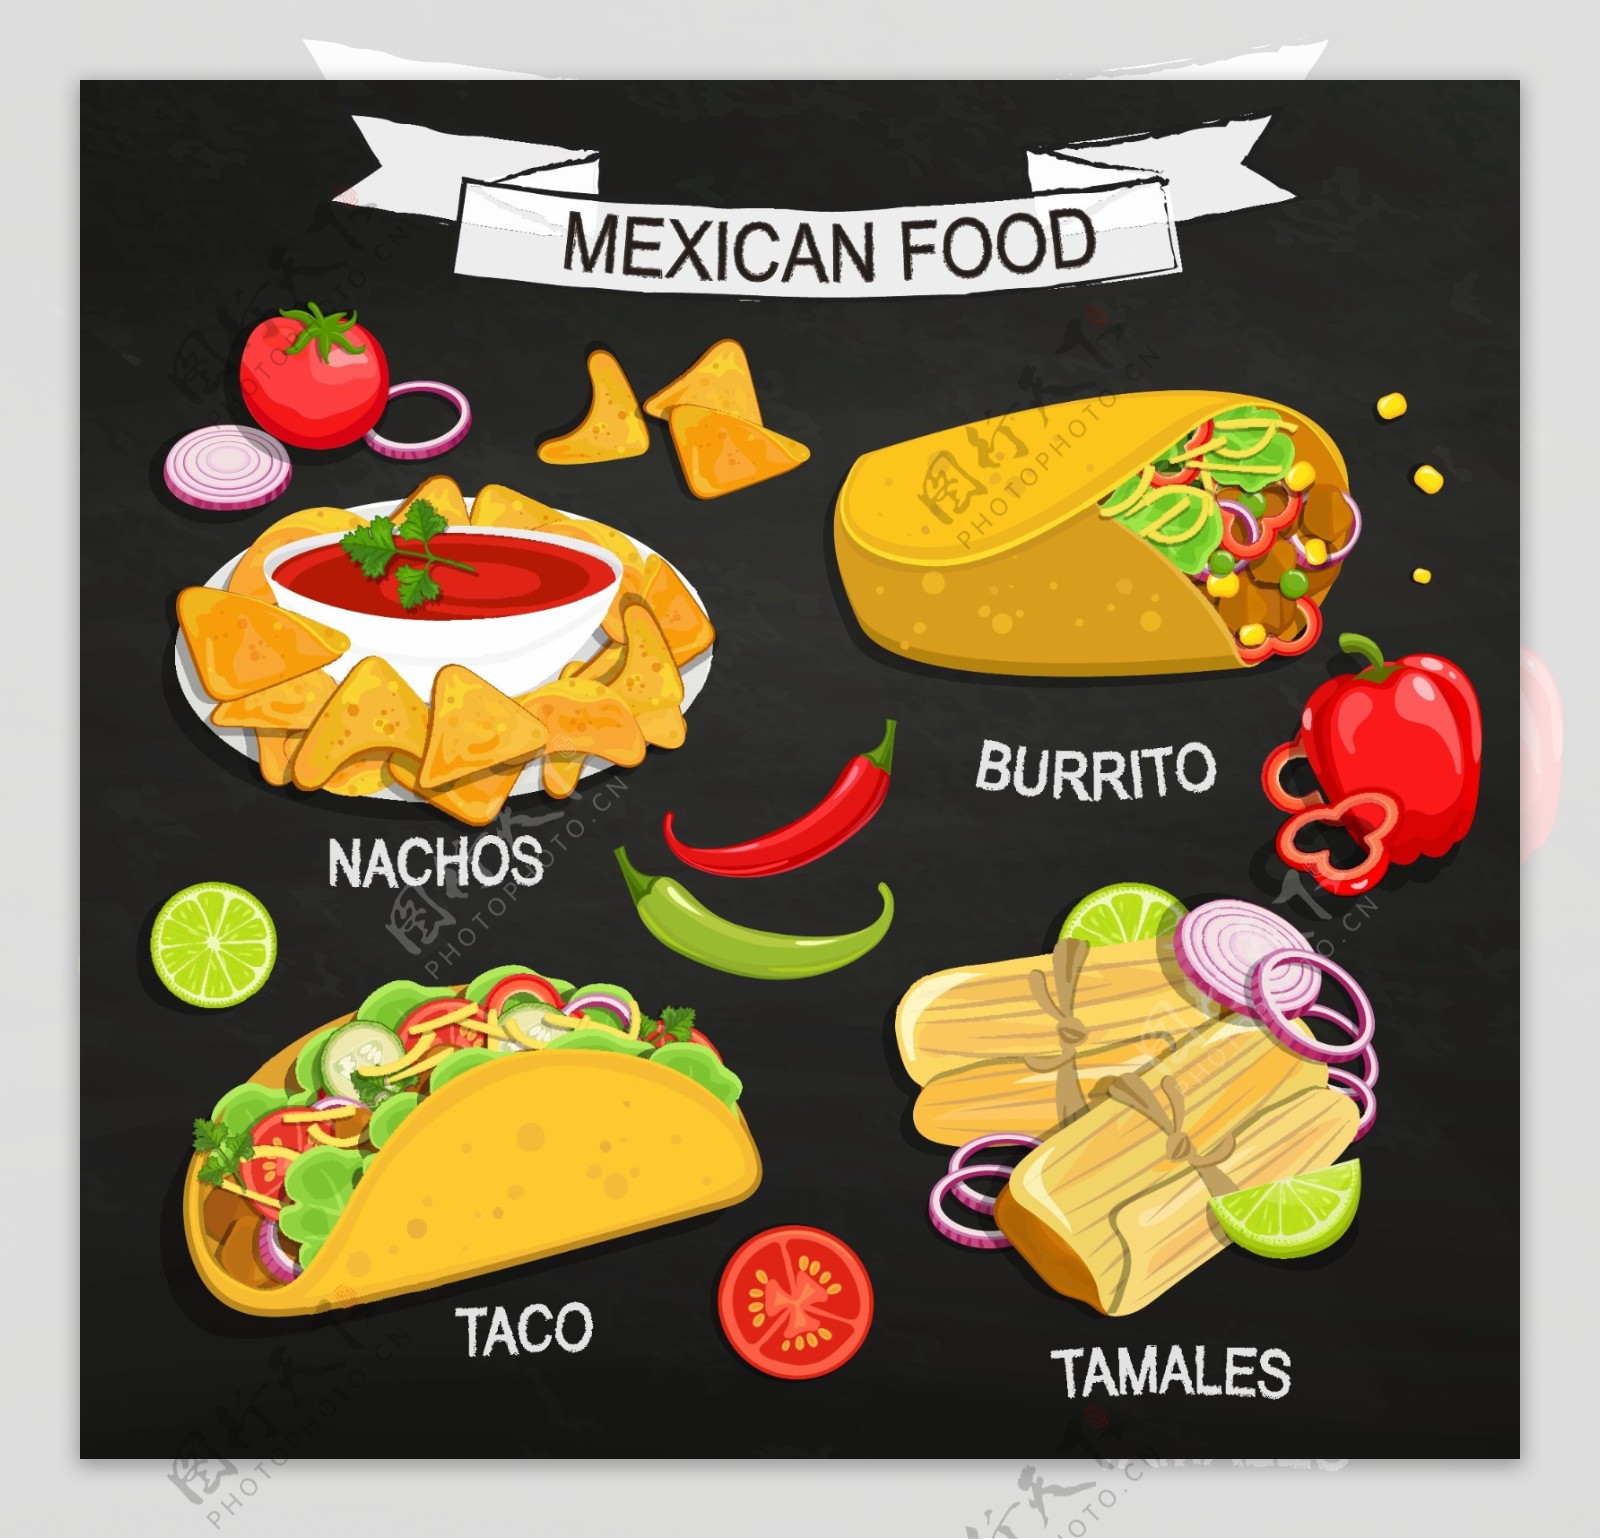 4款美味墨西哥食物矢量素材